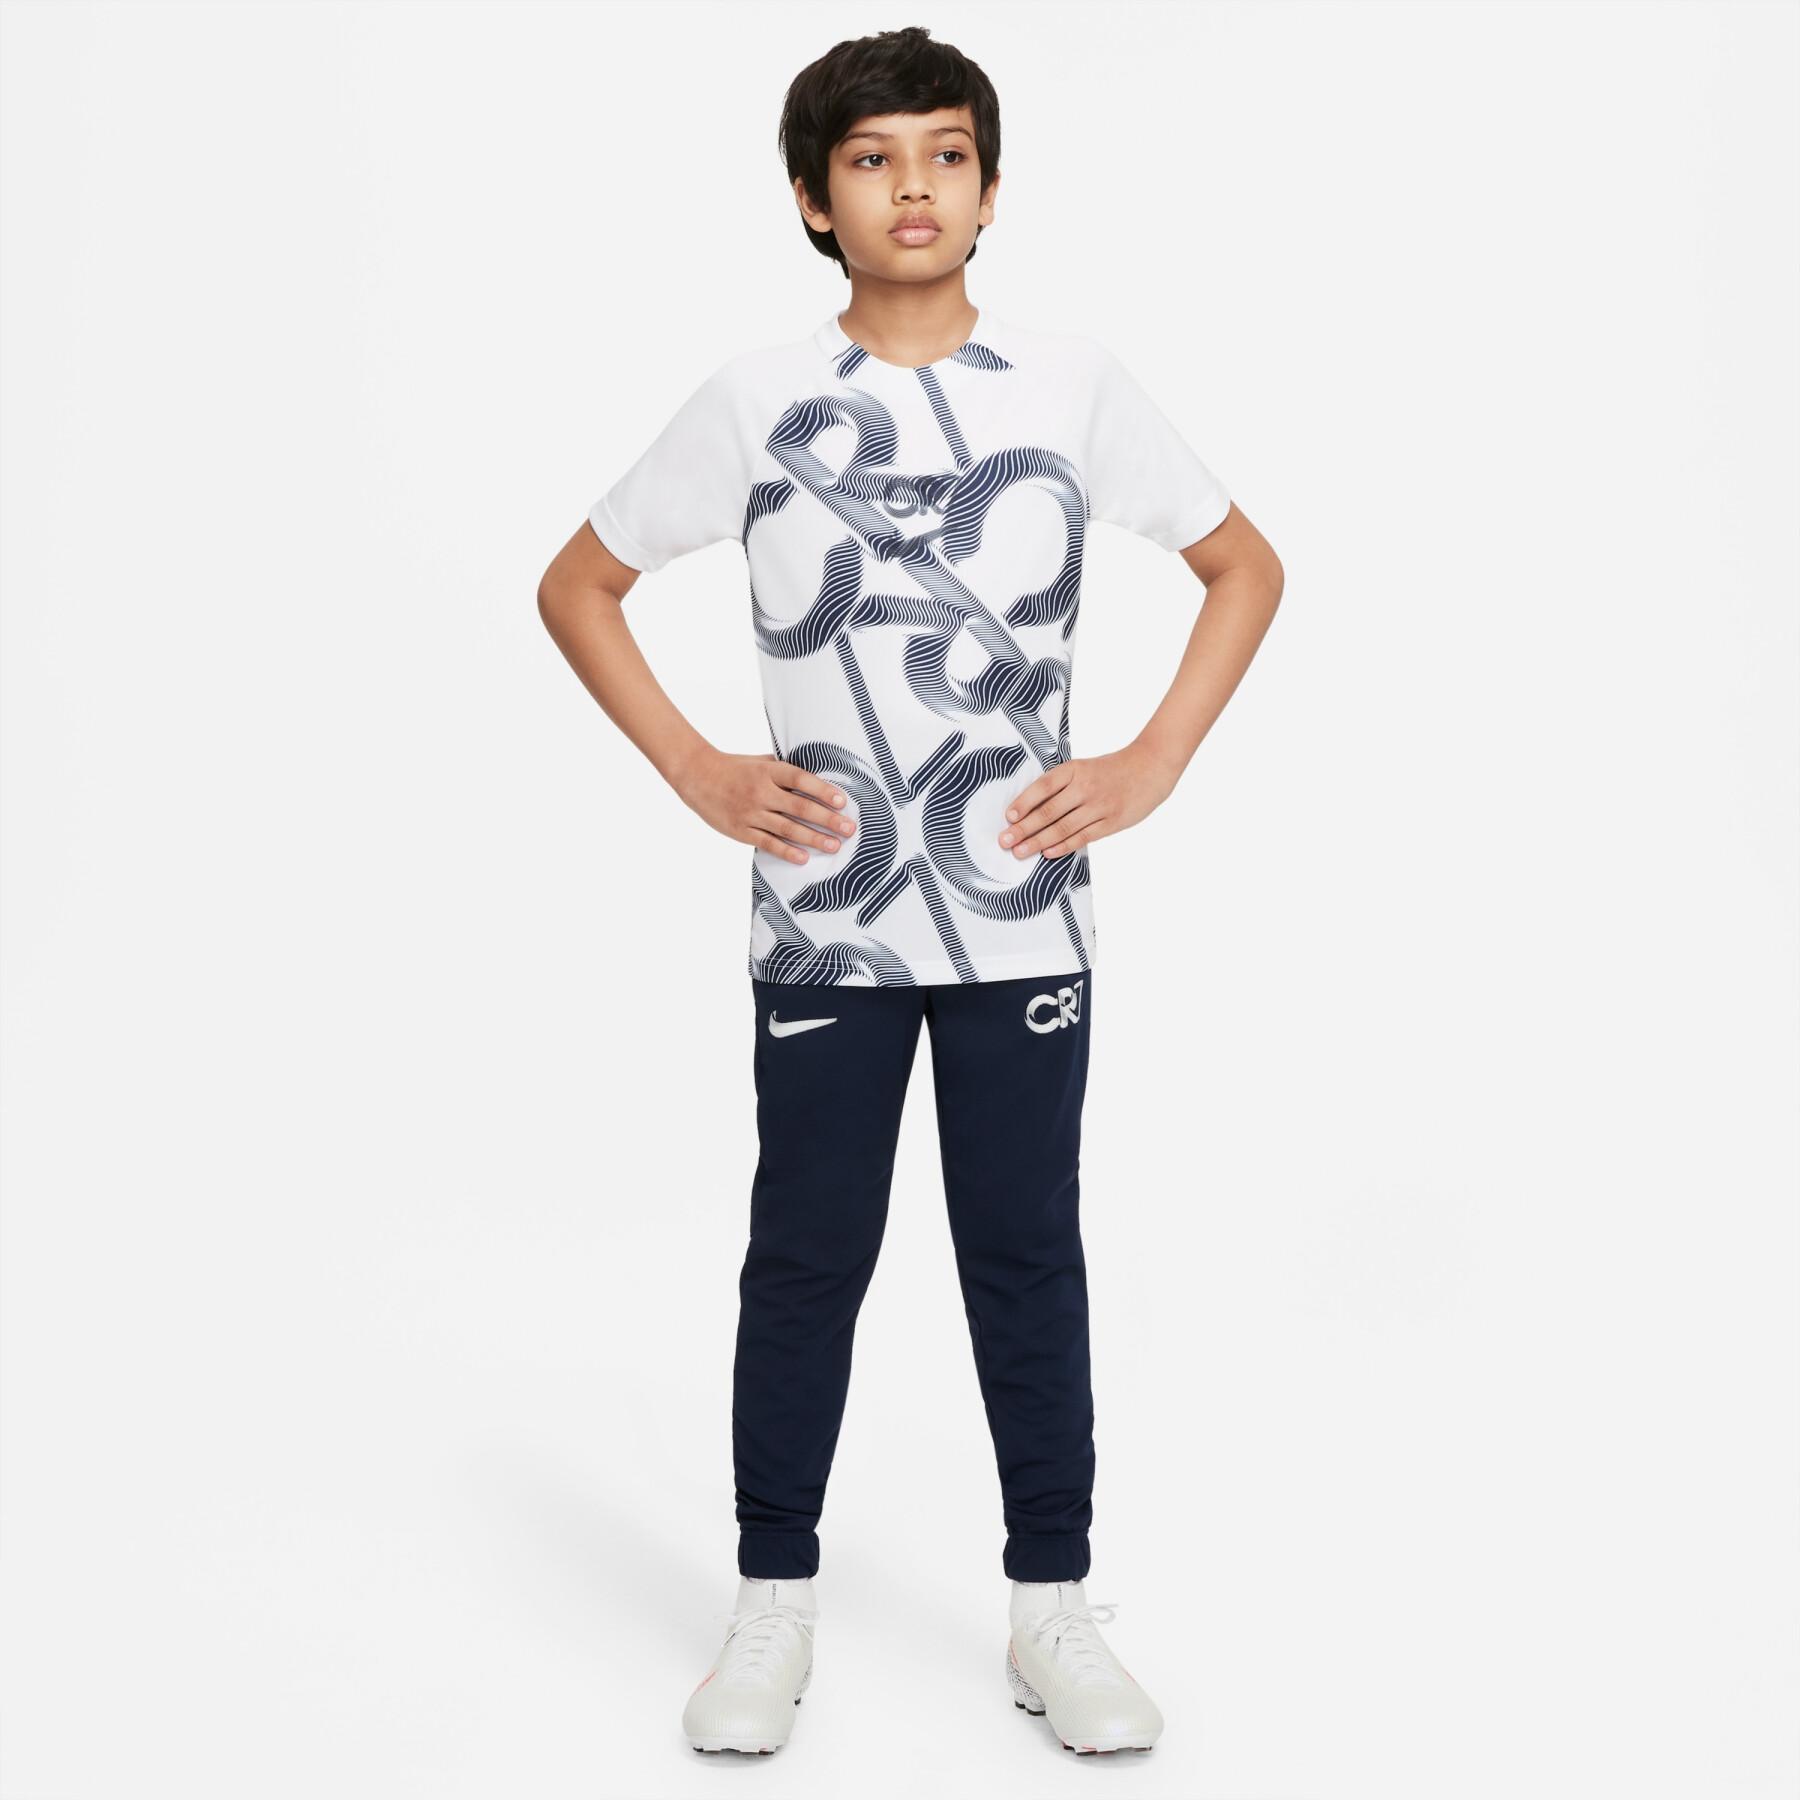 Children's Sweatpants suit Nike Dri-FIT